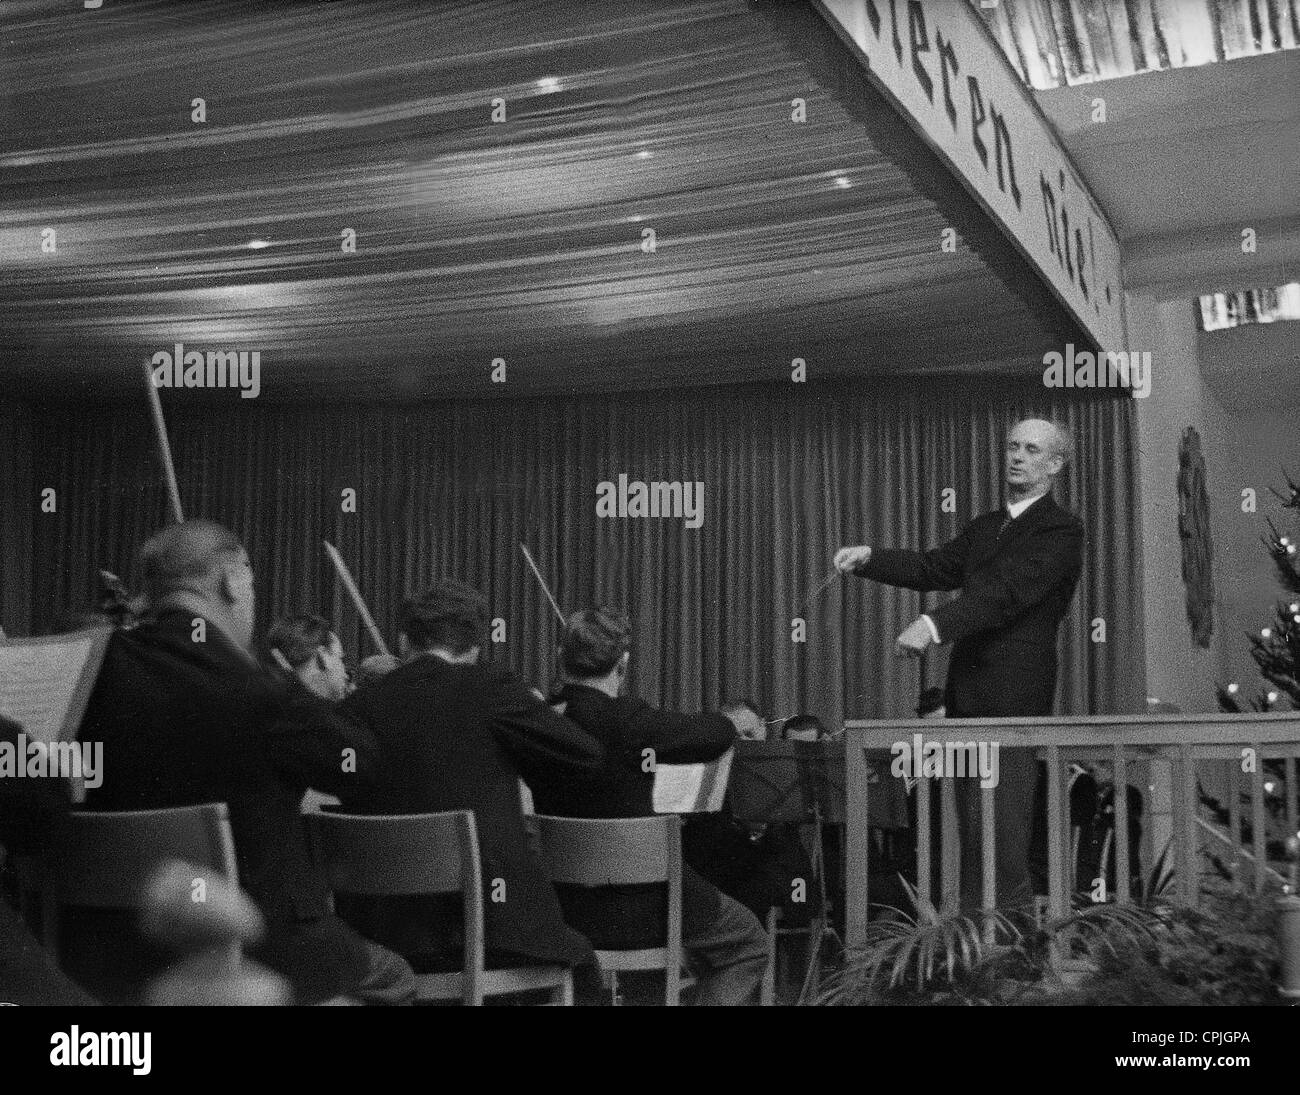 Wilhelm Furtwangler during a Werkskonzert (company concert), 1939 Stock Photo